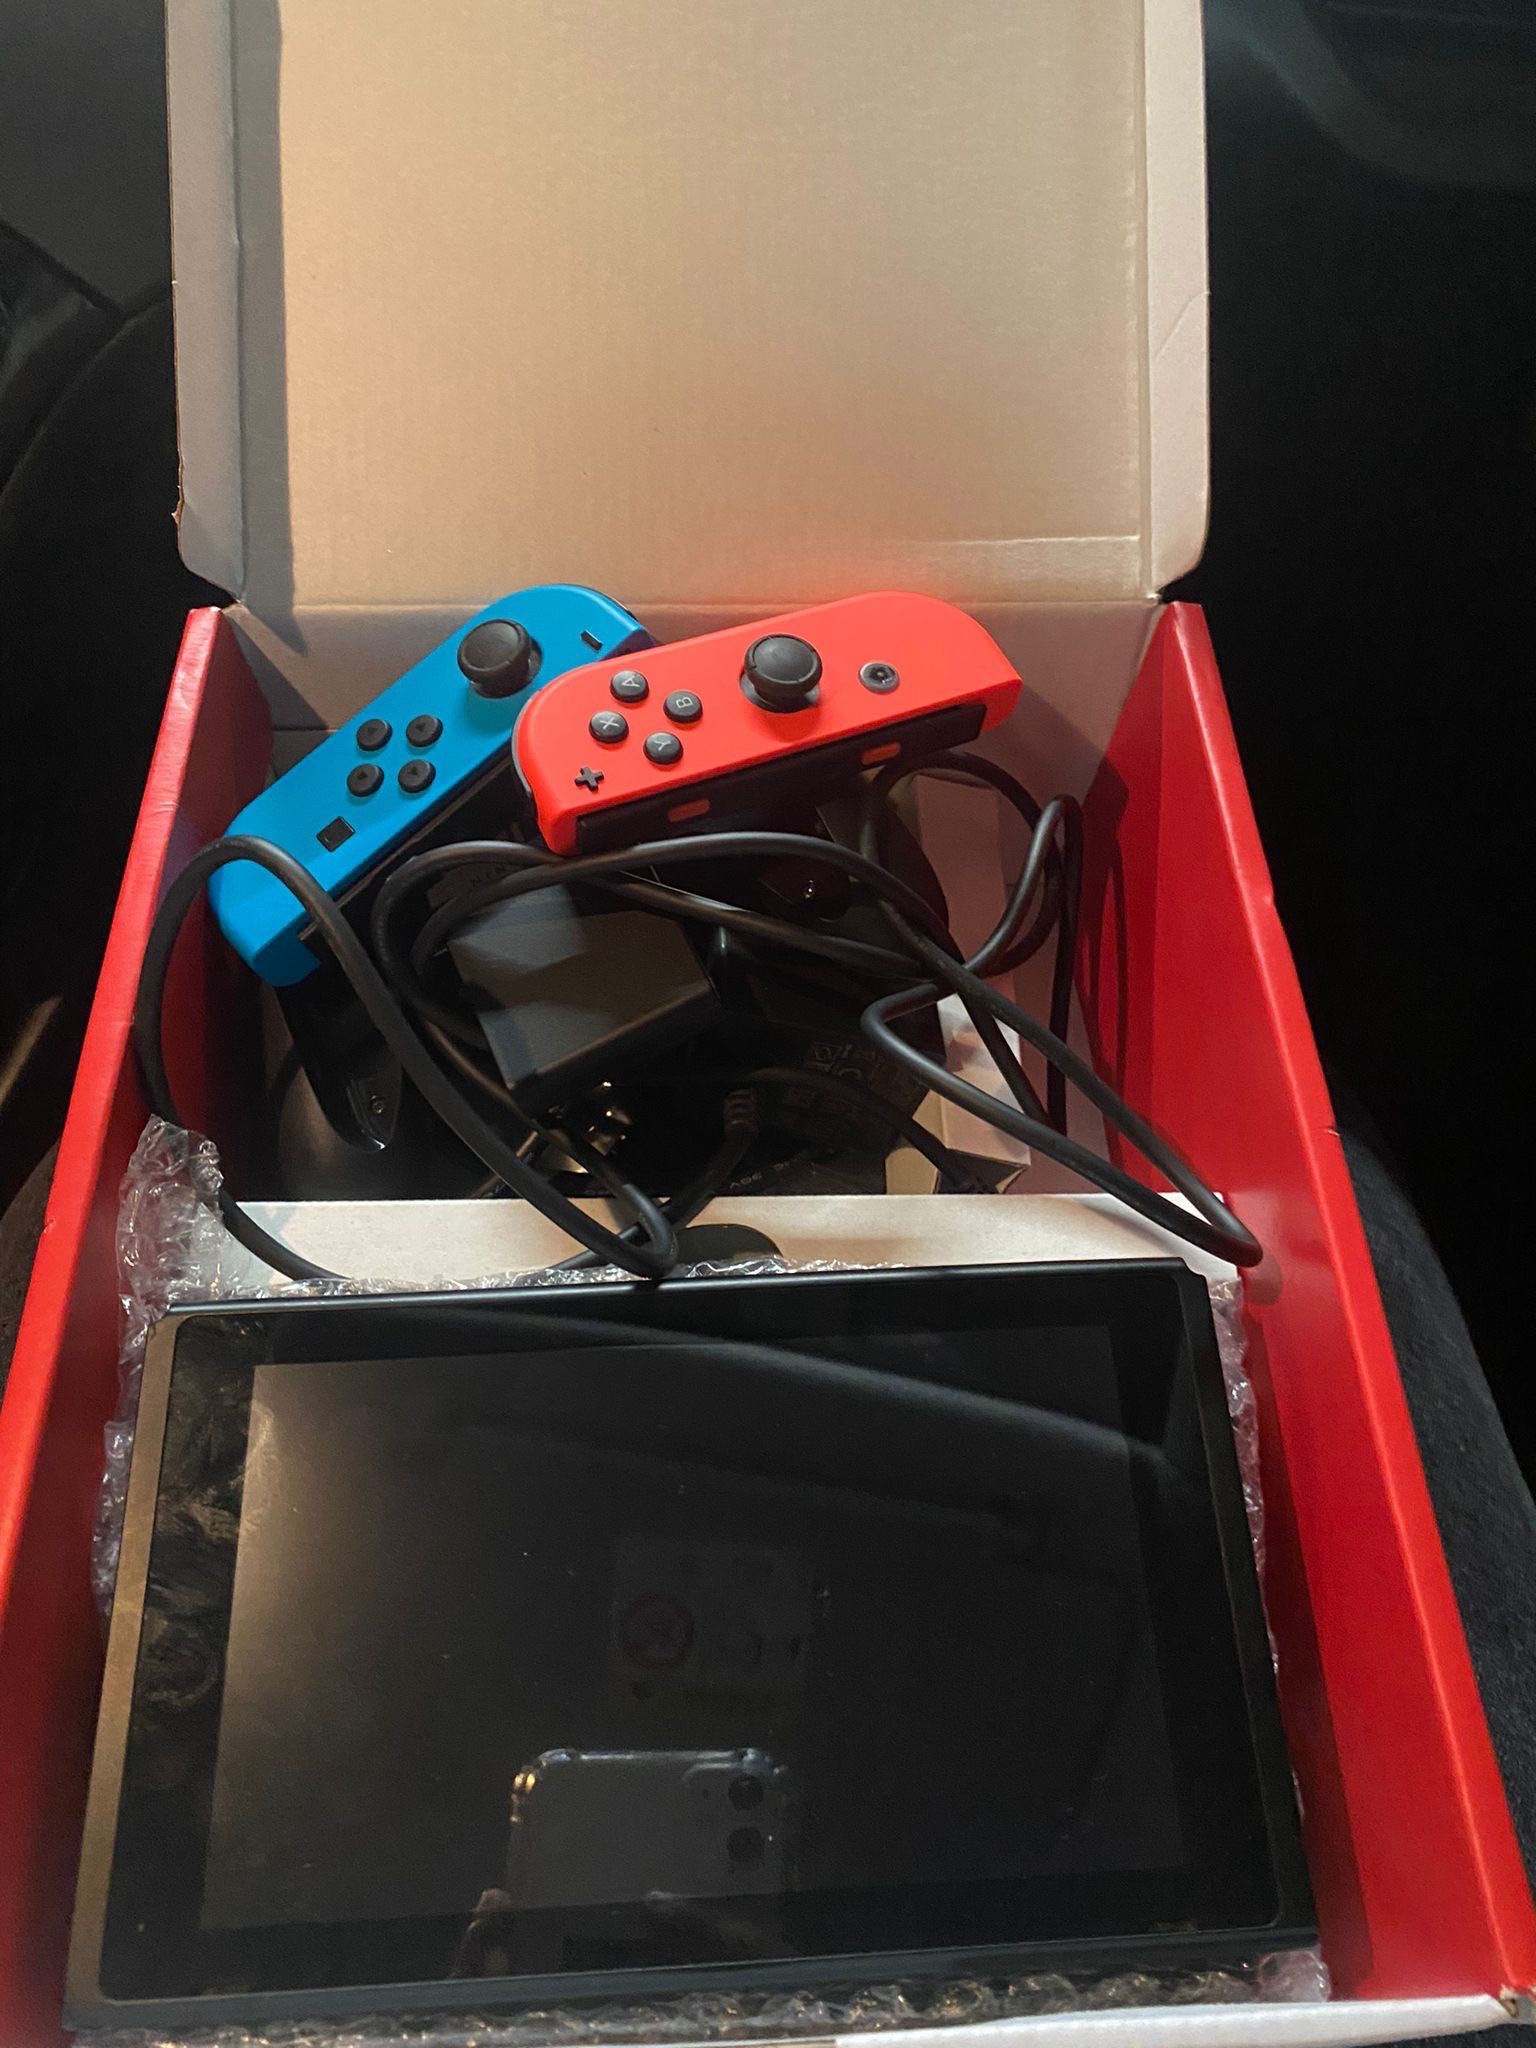 Nintendo switch vermelho/azul